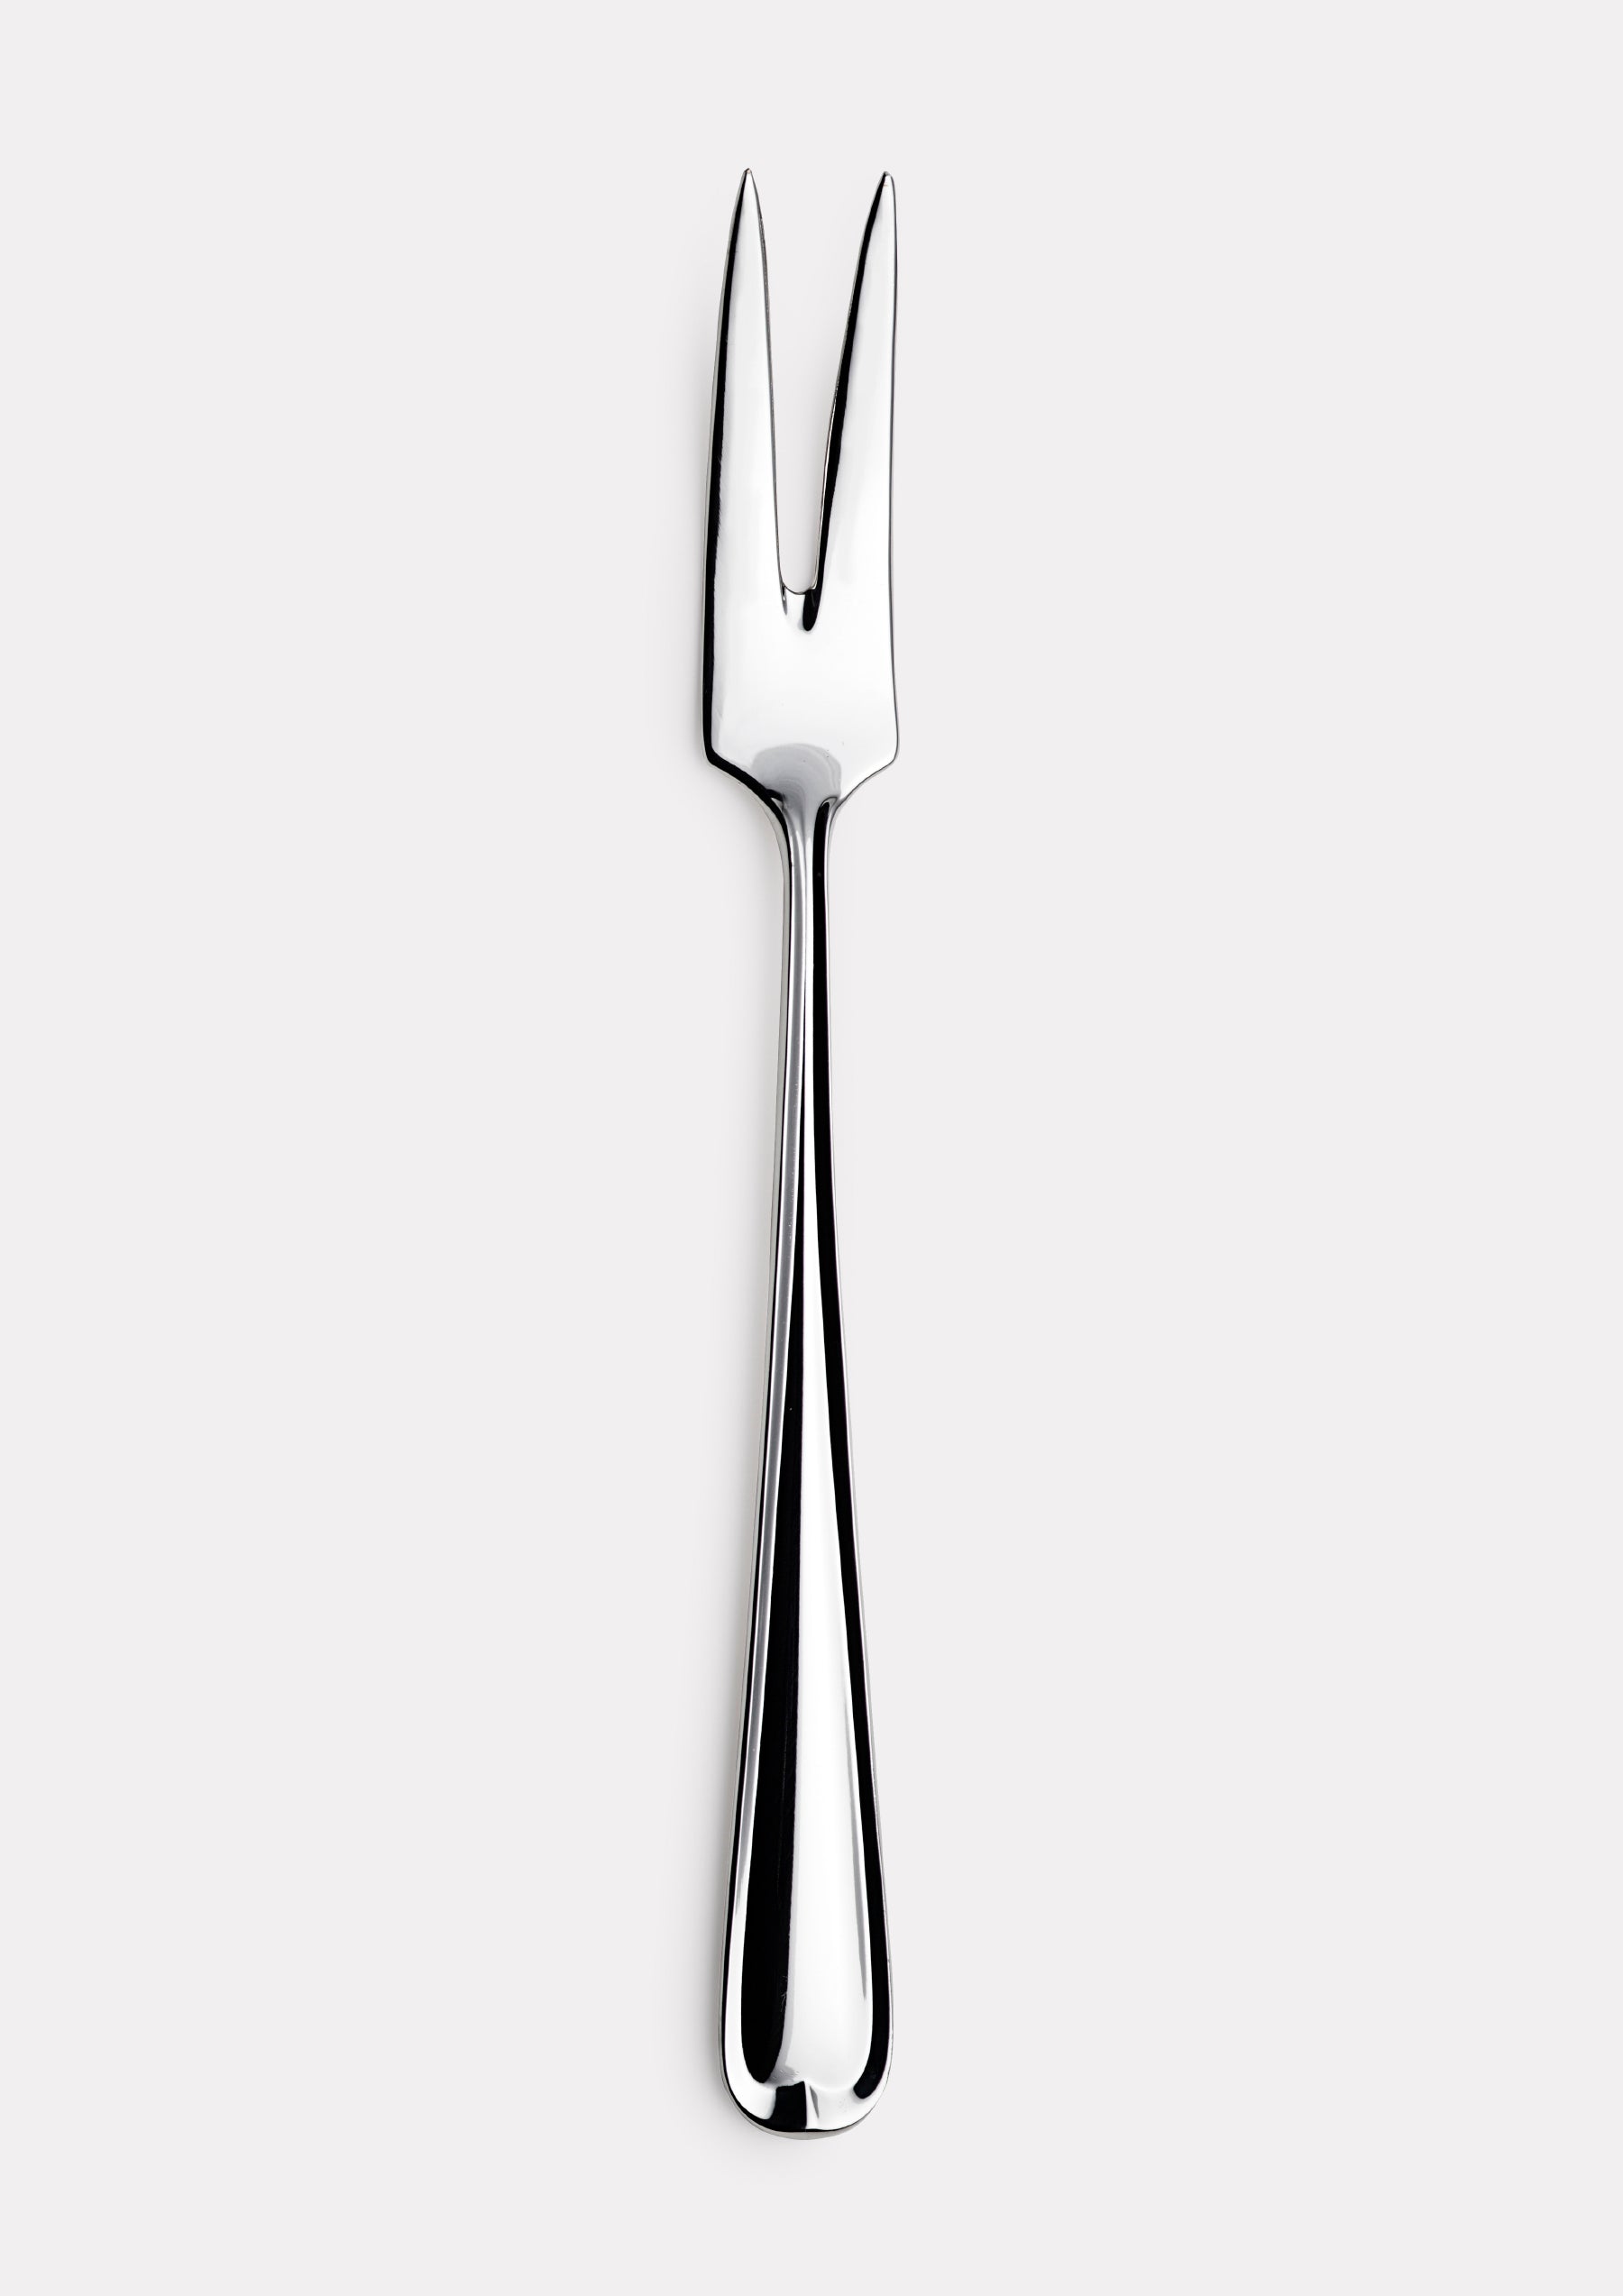 Jubilee service fork